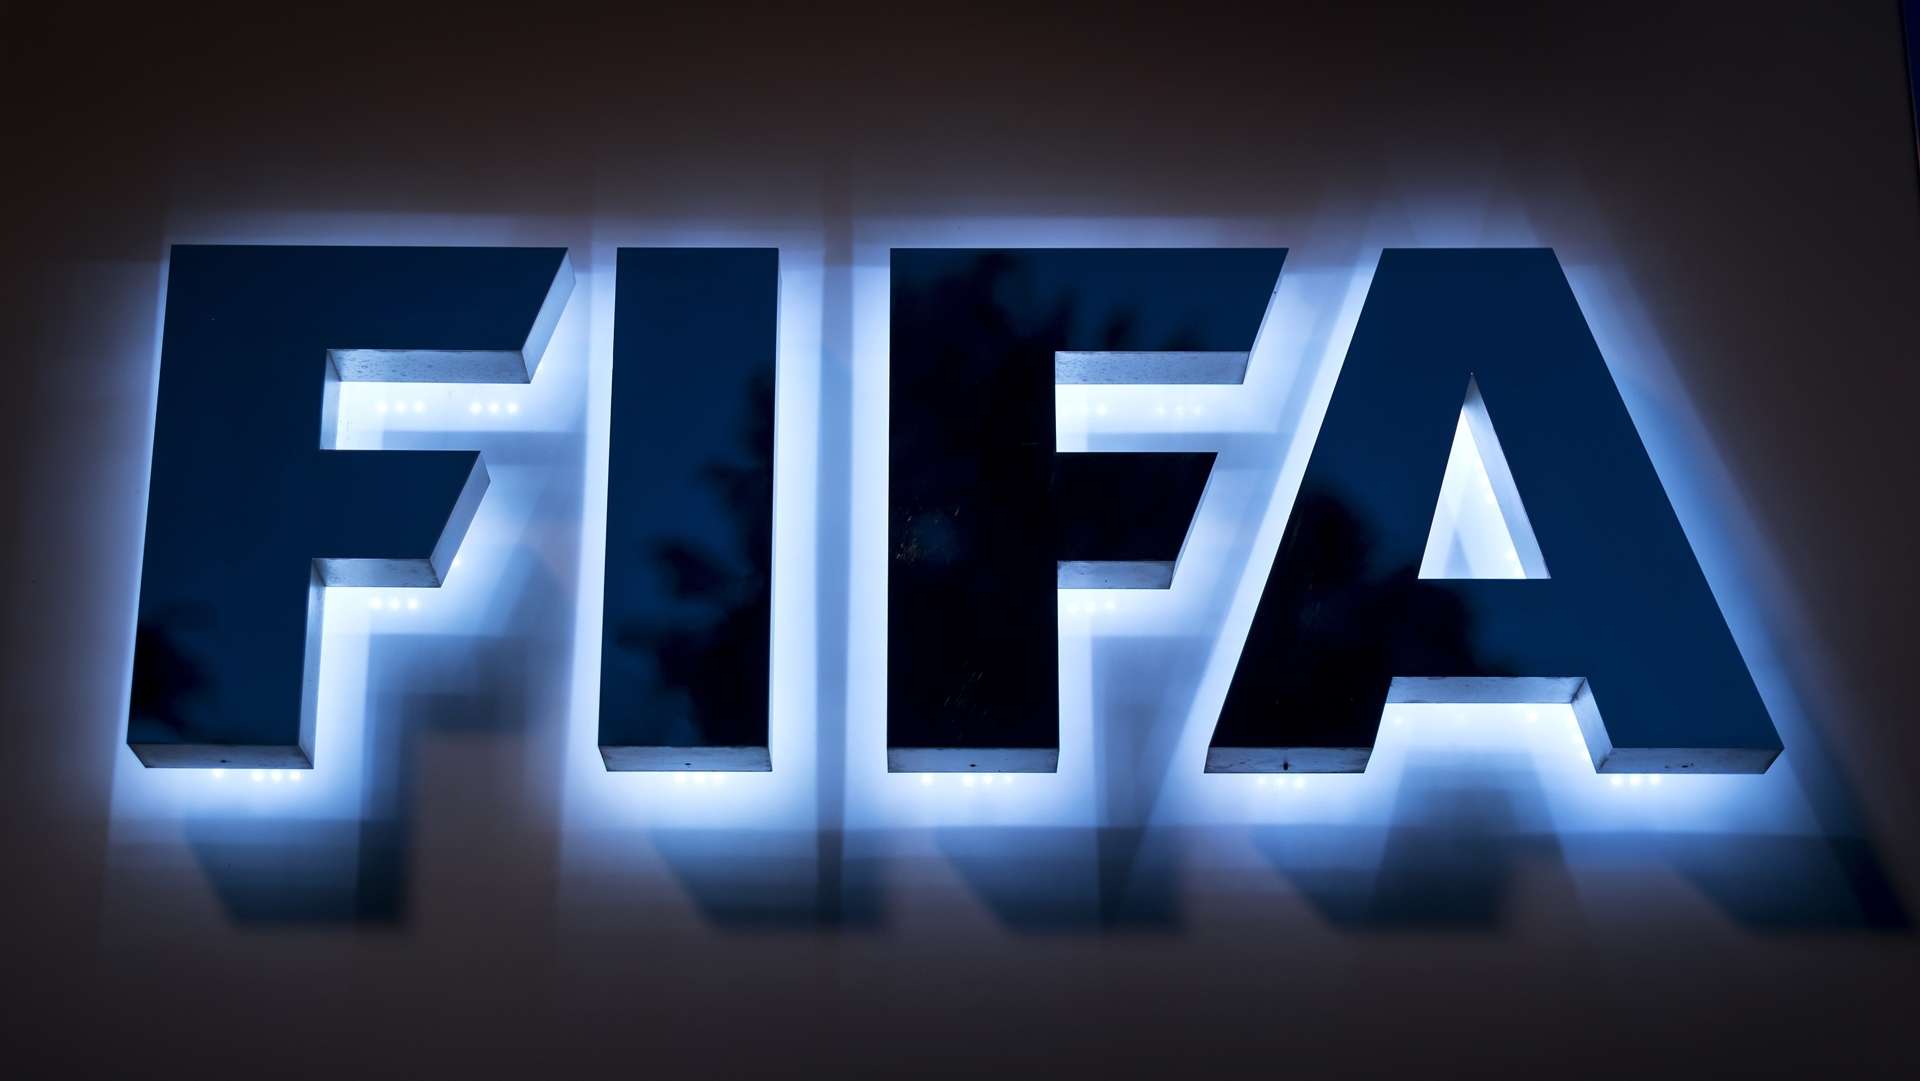 FIFA_Logo